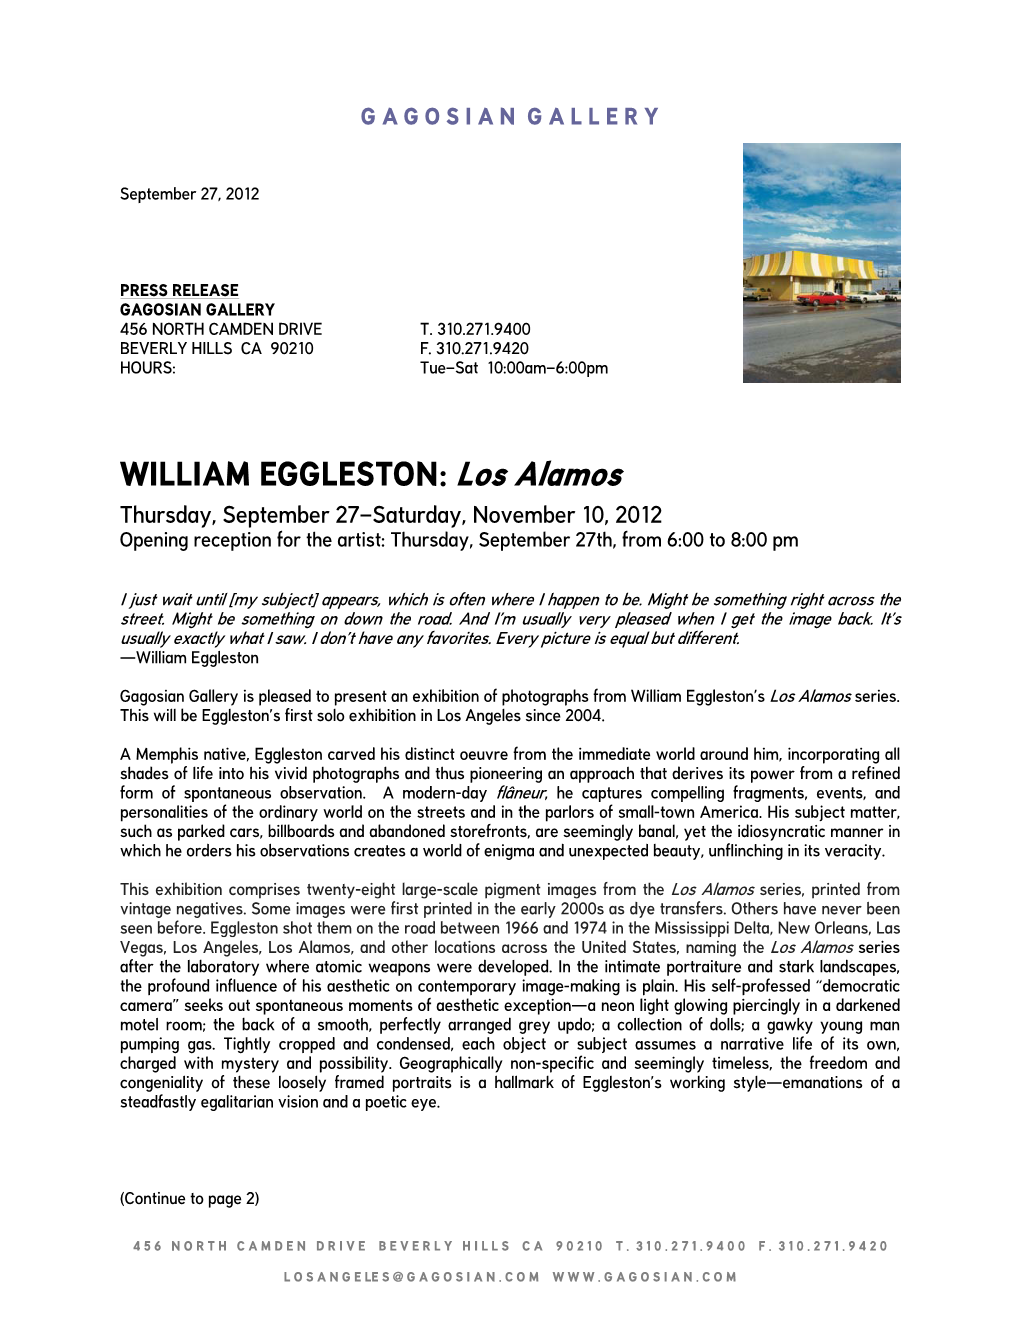 WILLIAM EGGLESTON: Los Alamos